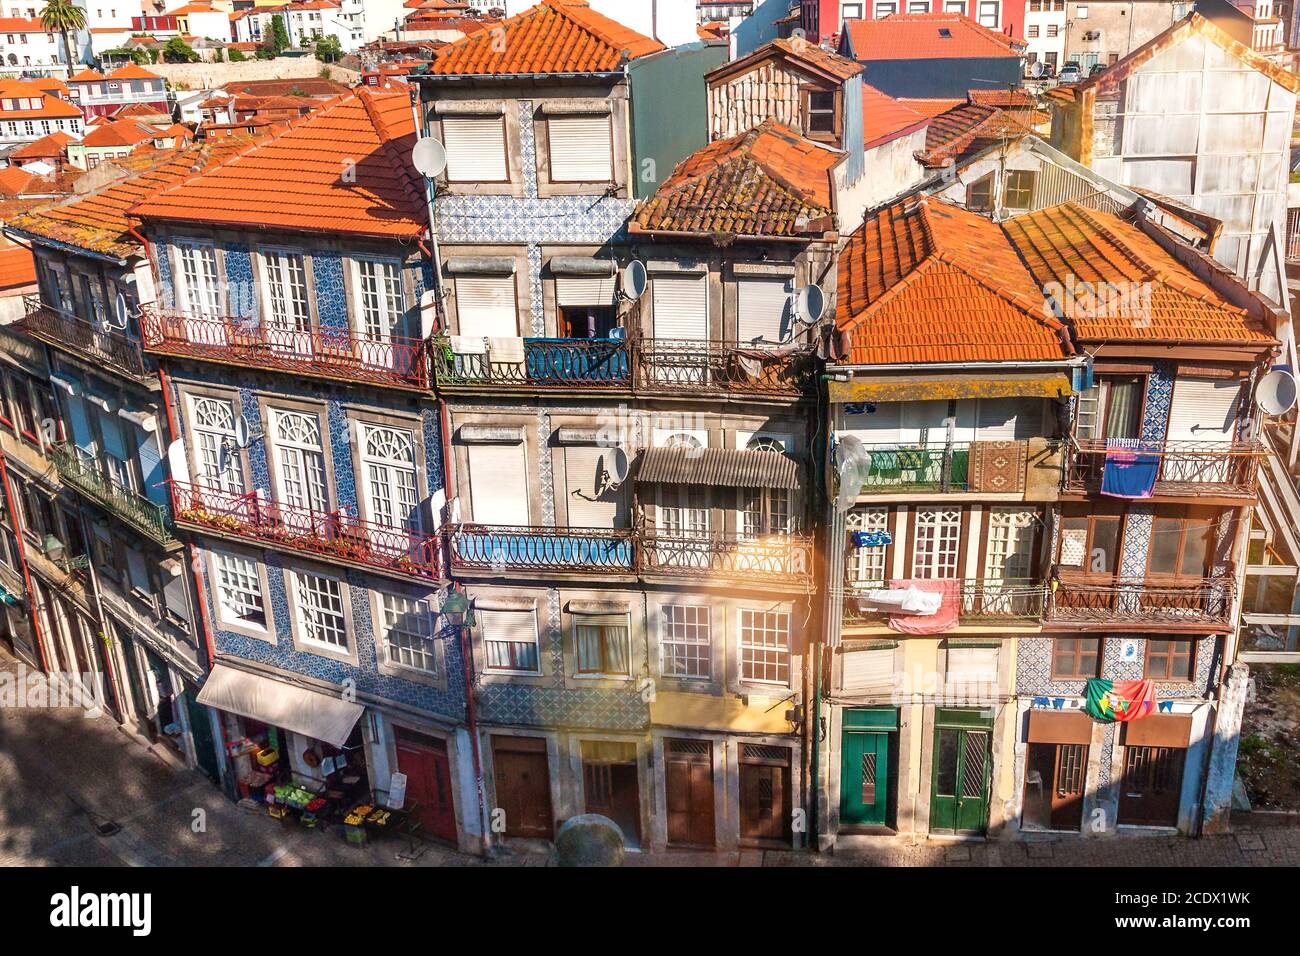 Houses ensemble in the old town Ribeira of Porto Stock Photo